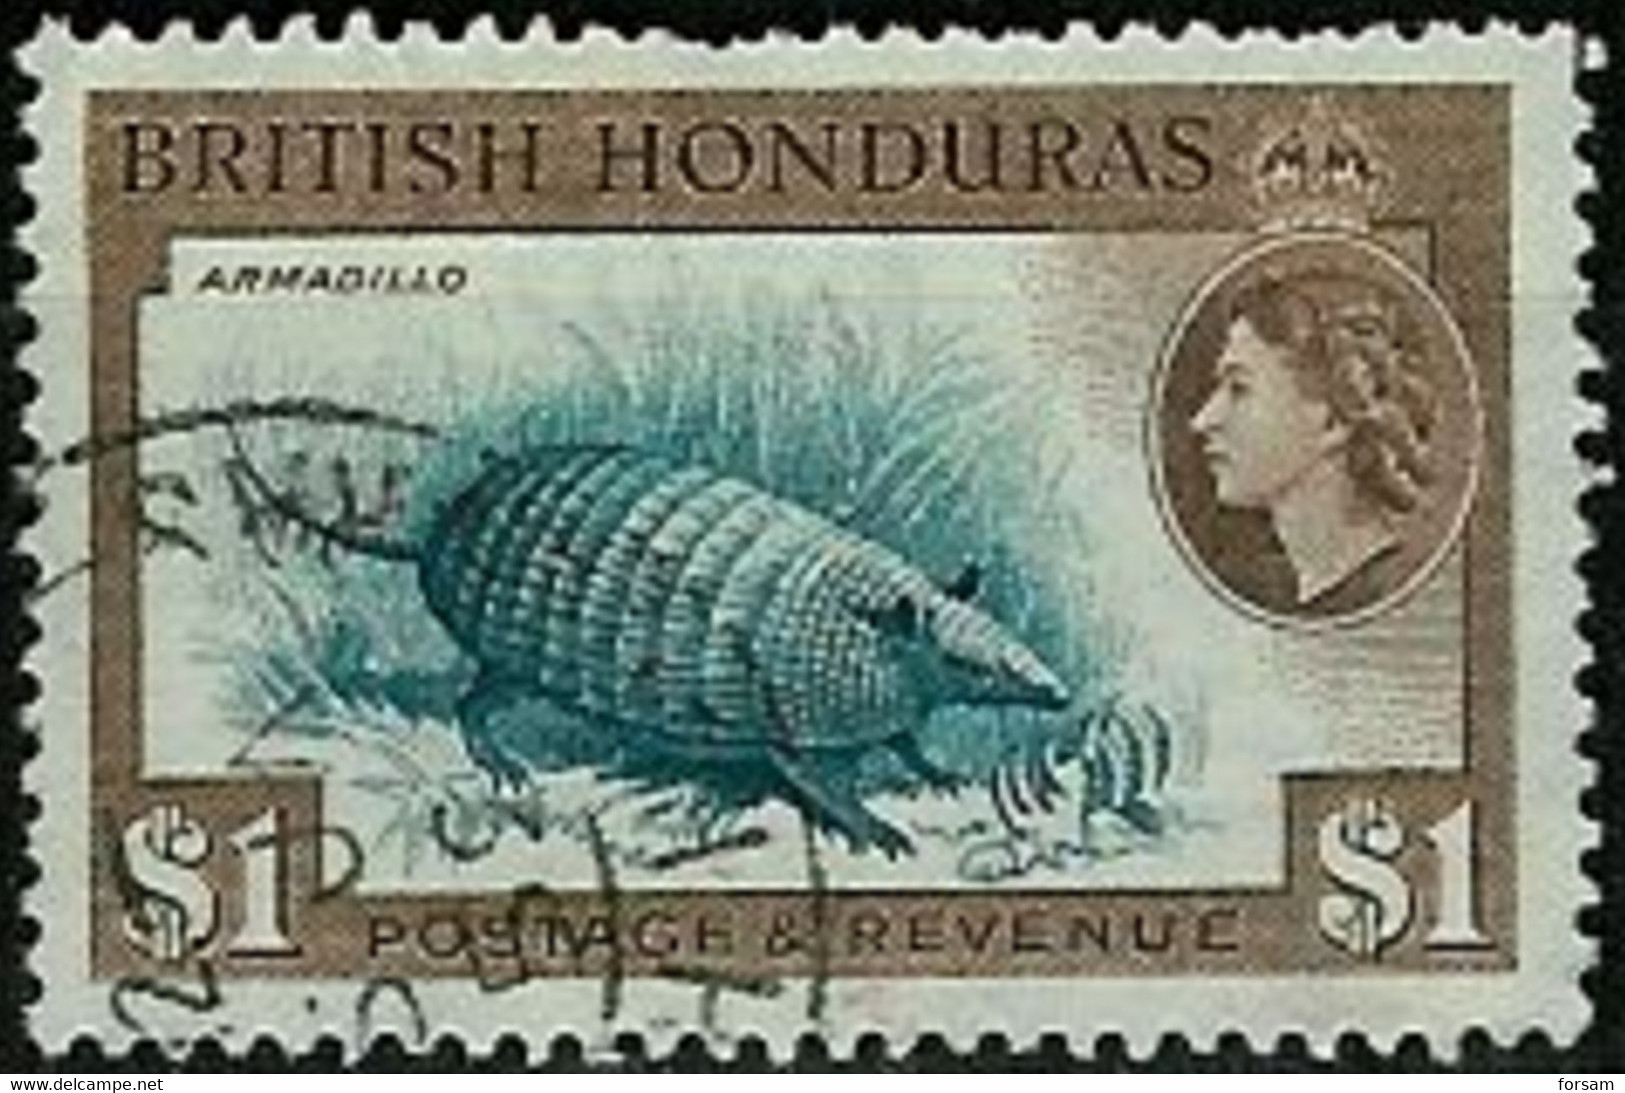 BRITISH HONDURAS..1953..Michel # 150 A..used. - Honduras Britannico (...-1970)